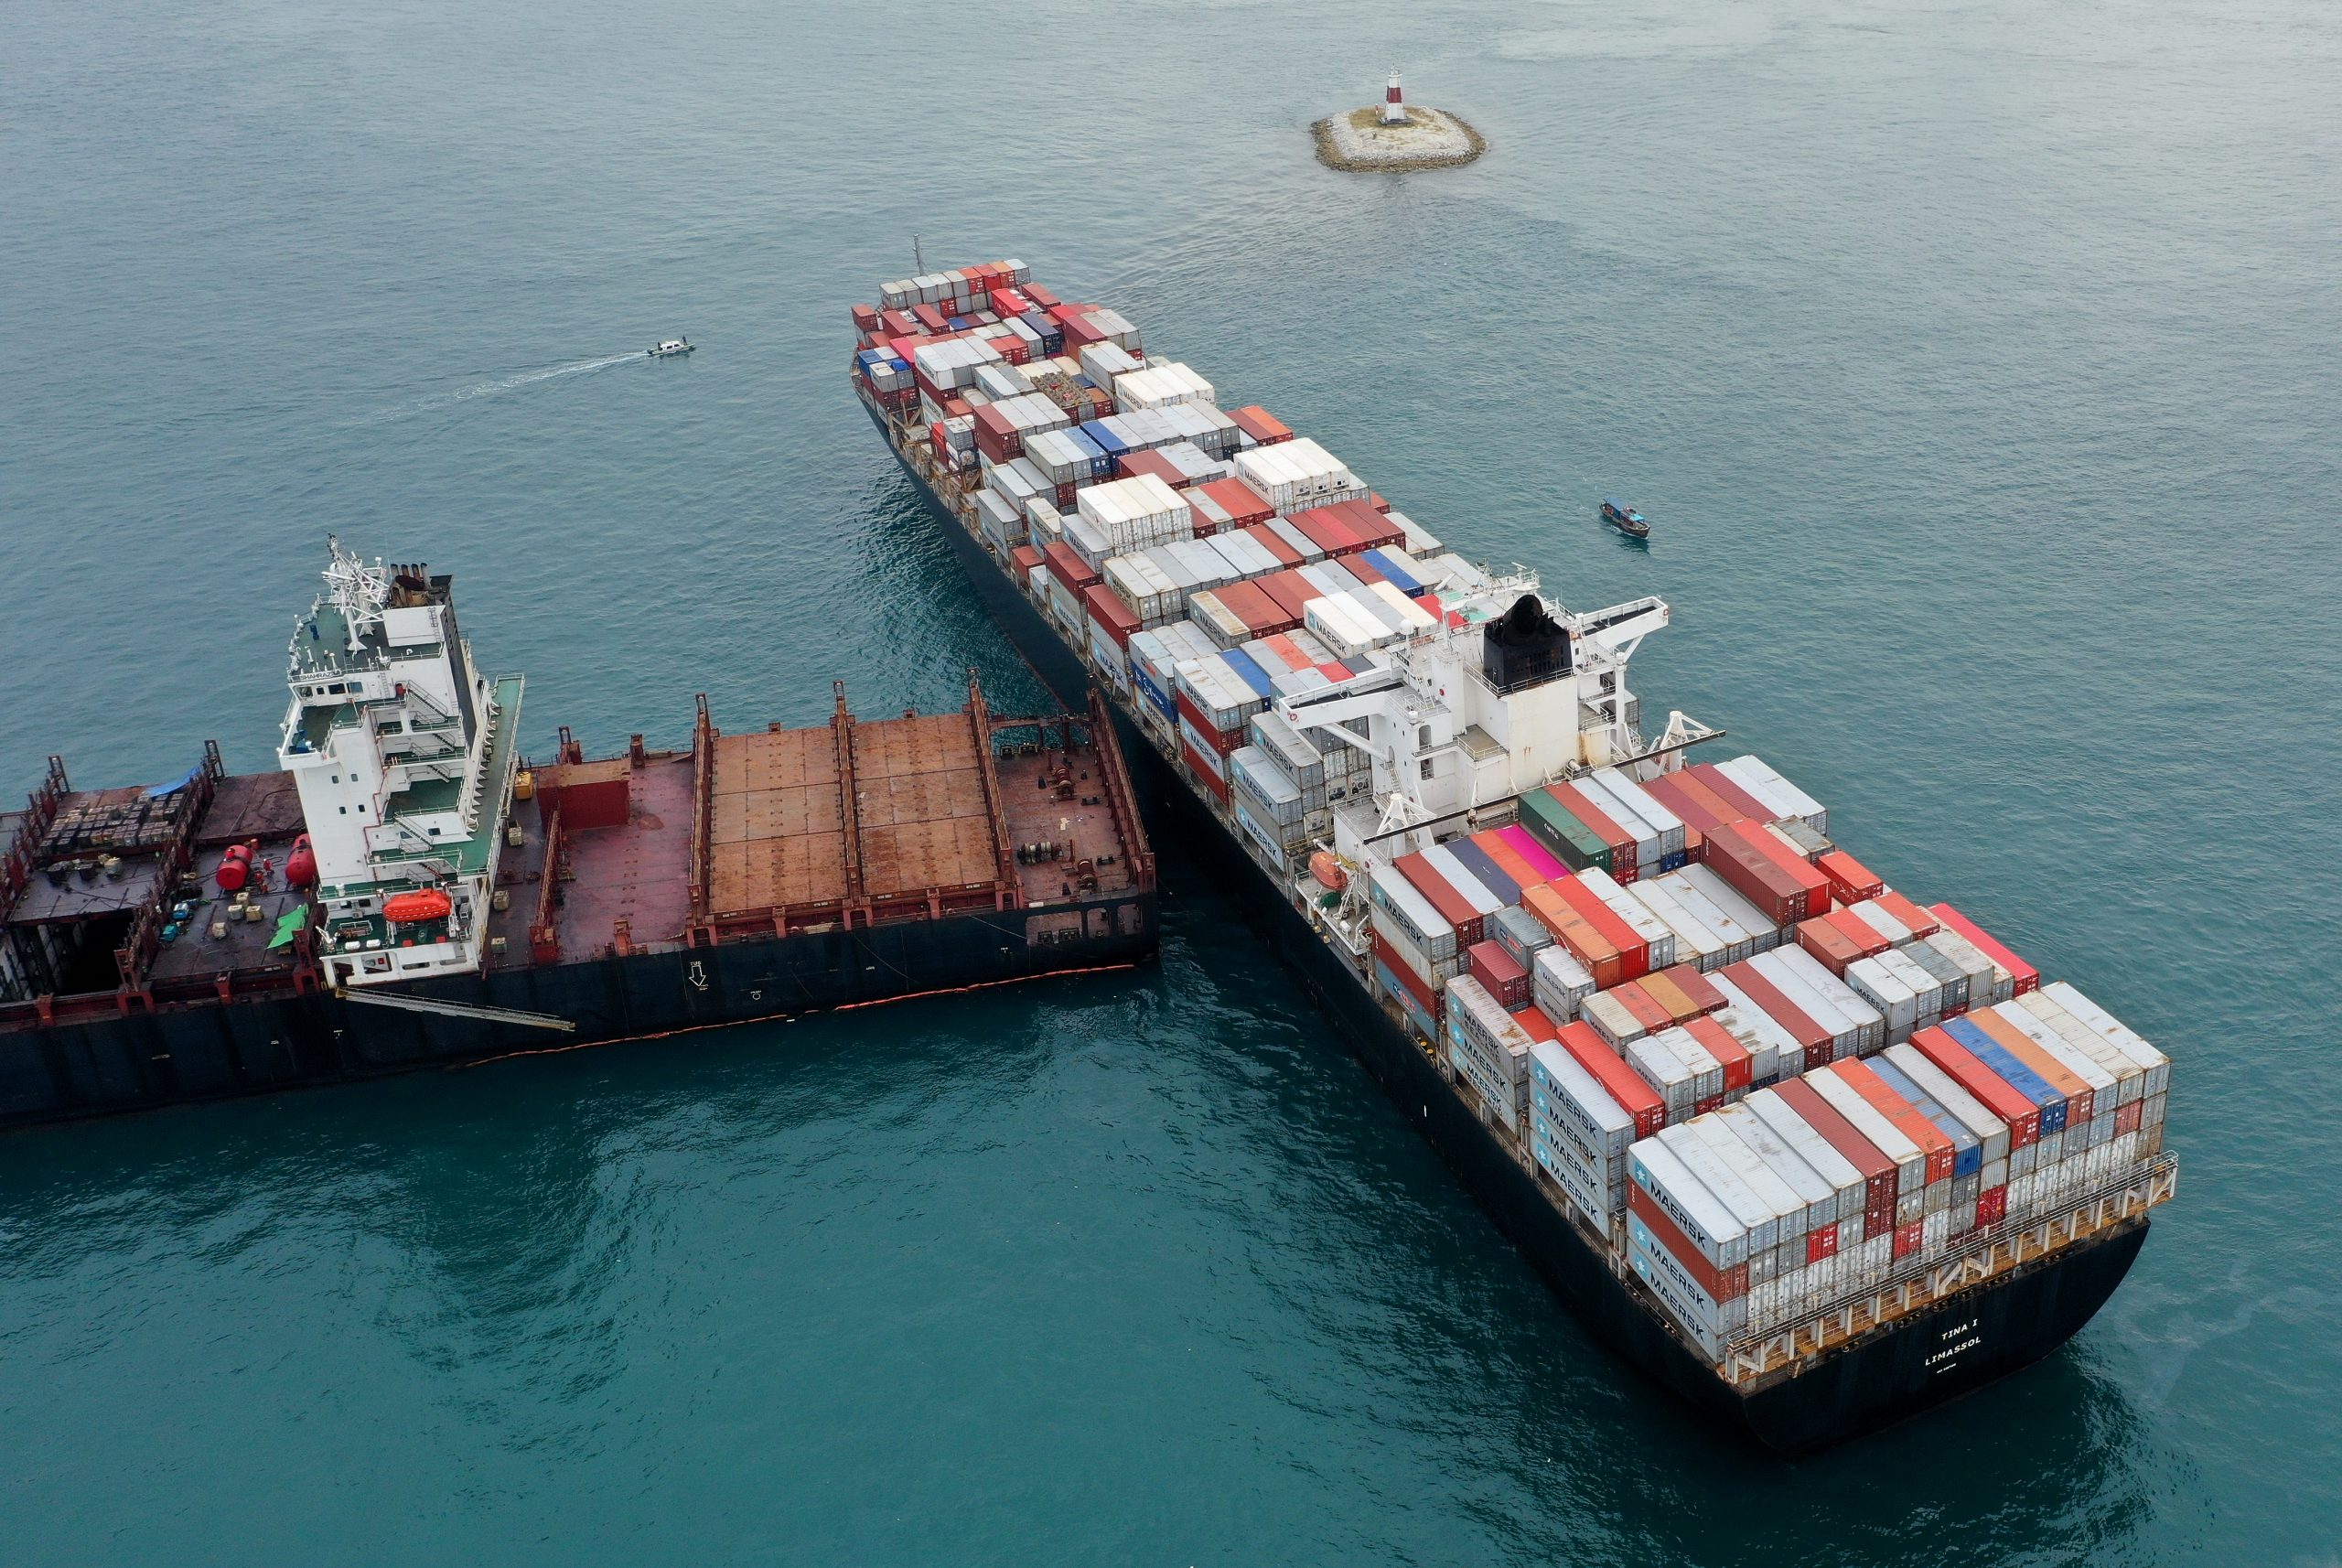 Het Iraanse containerschip lag al sinds mei 2020 aan de grond in de Straat Singapore. (Foto Piet Sinke - Maasmond Maritime)